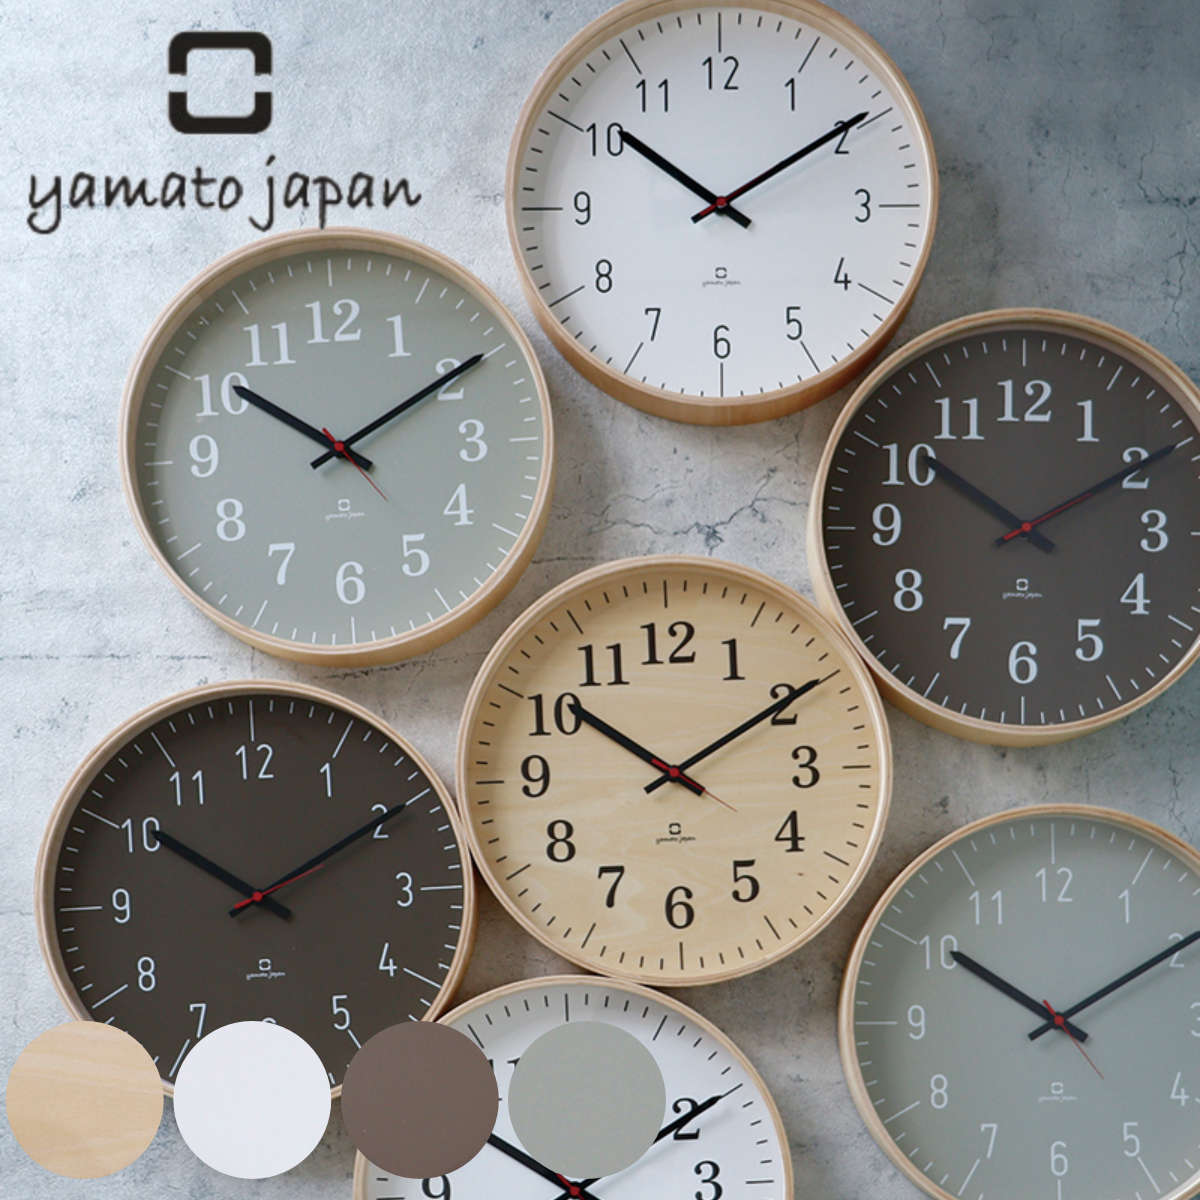 YAMATO 日本製 fullmoon 壁掛 時鐘 掛鐘 壁鐘 連續秒針 靜音時鐘 木頭 木製 工藝